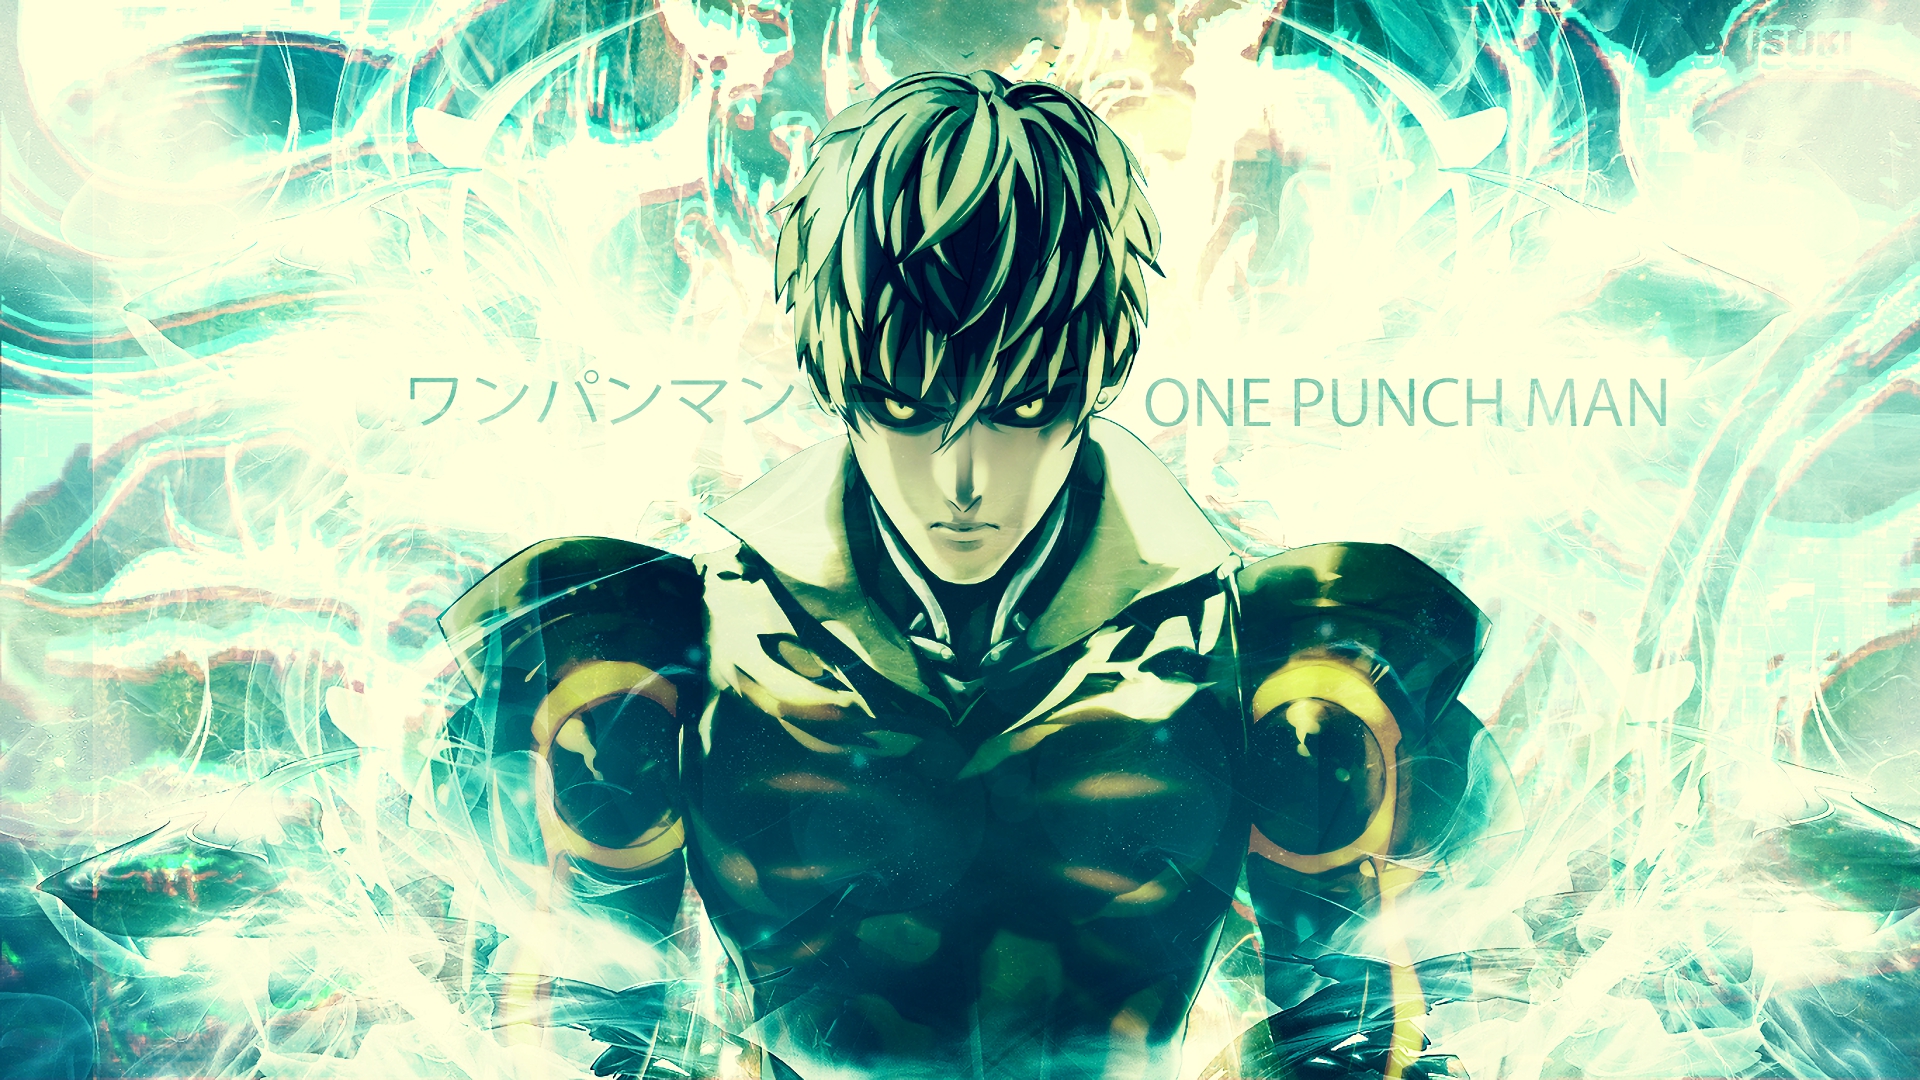 Saitama Genos One Punch Man Wallpaper by kuronekoisawesum